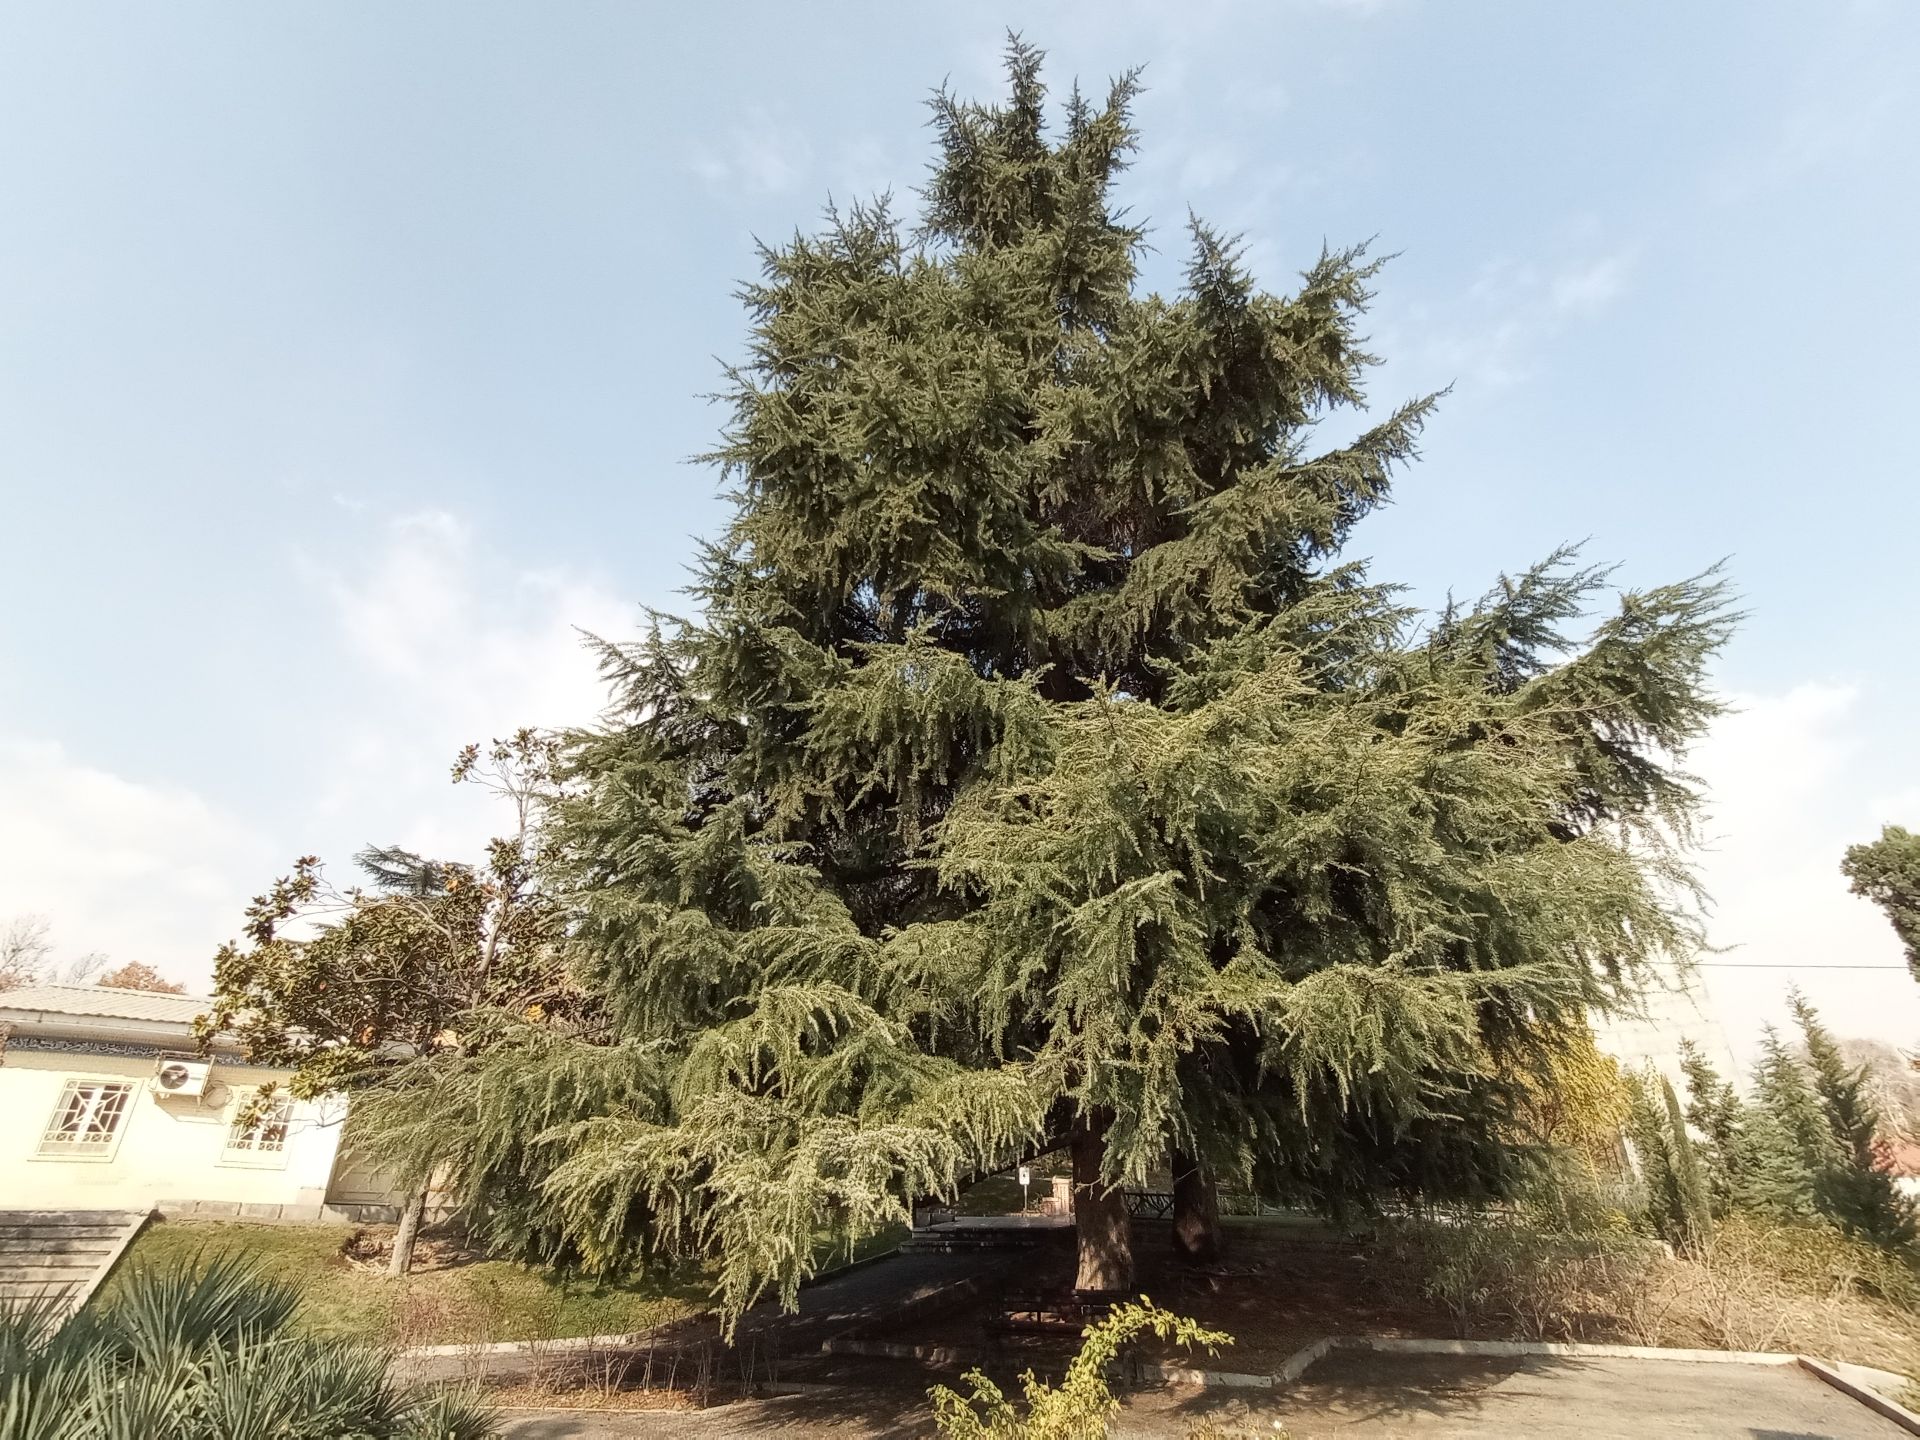 مرجع متخصصين ايران نمونه عكس دوربين اولتراوايد موبايل هواوي Y9a در طول روز - درختي در پارك ملت تهران